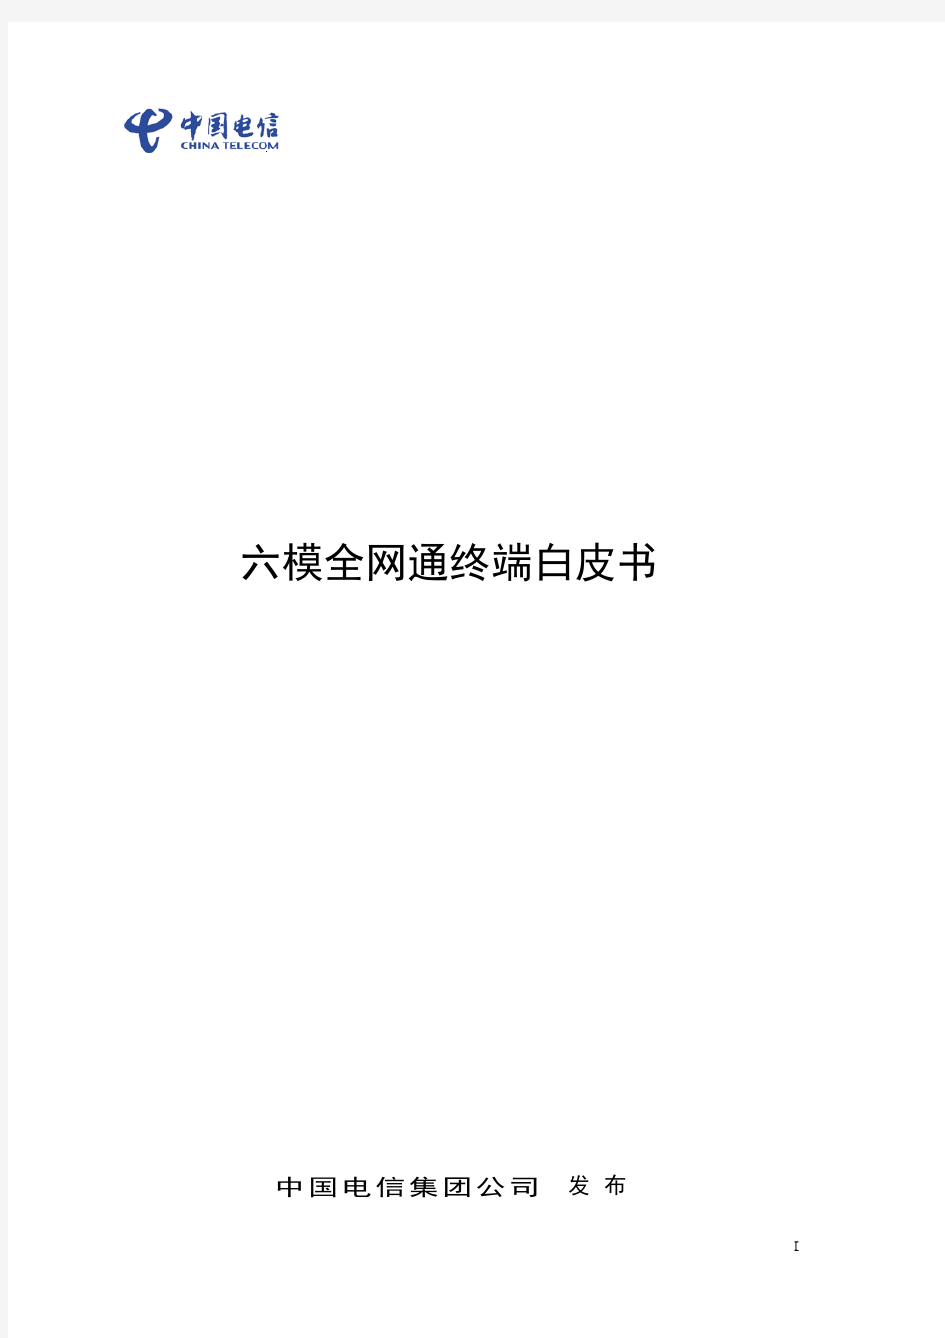 中国电信全网通六模终端白皮书(联合发布版)2015-12-11